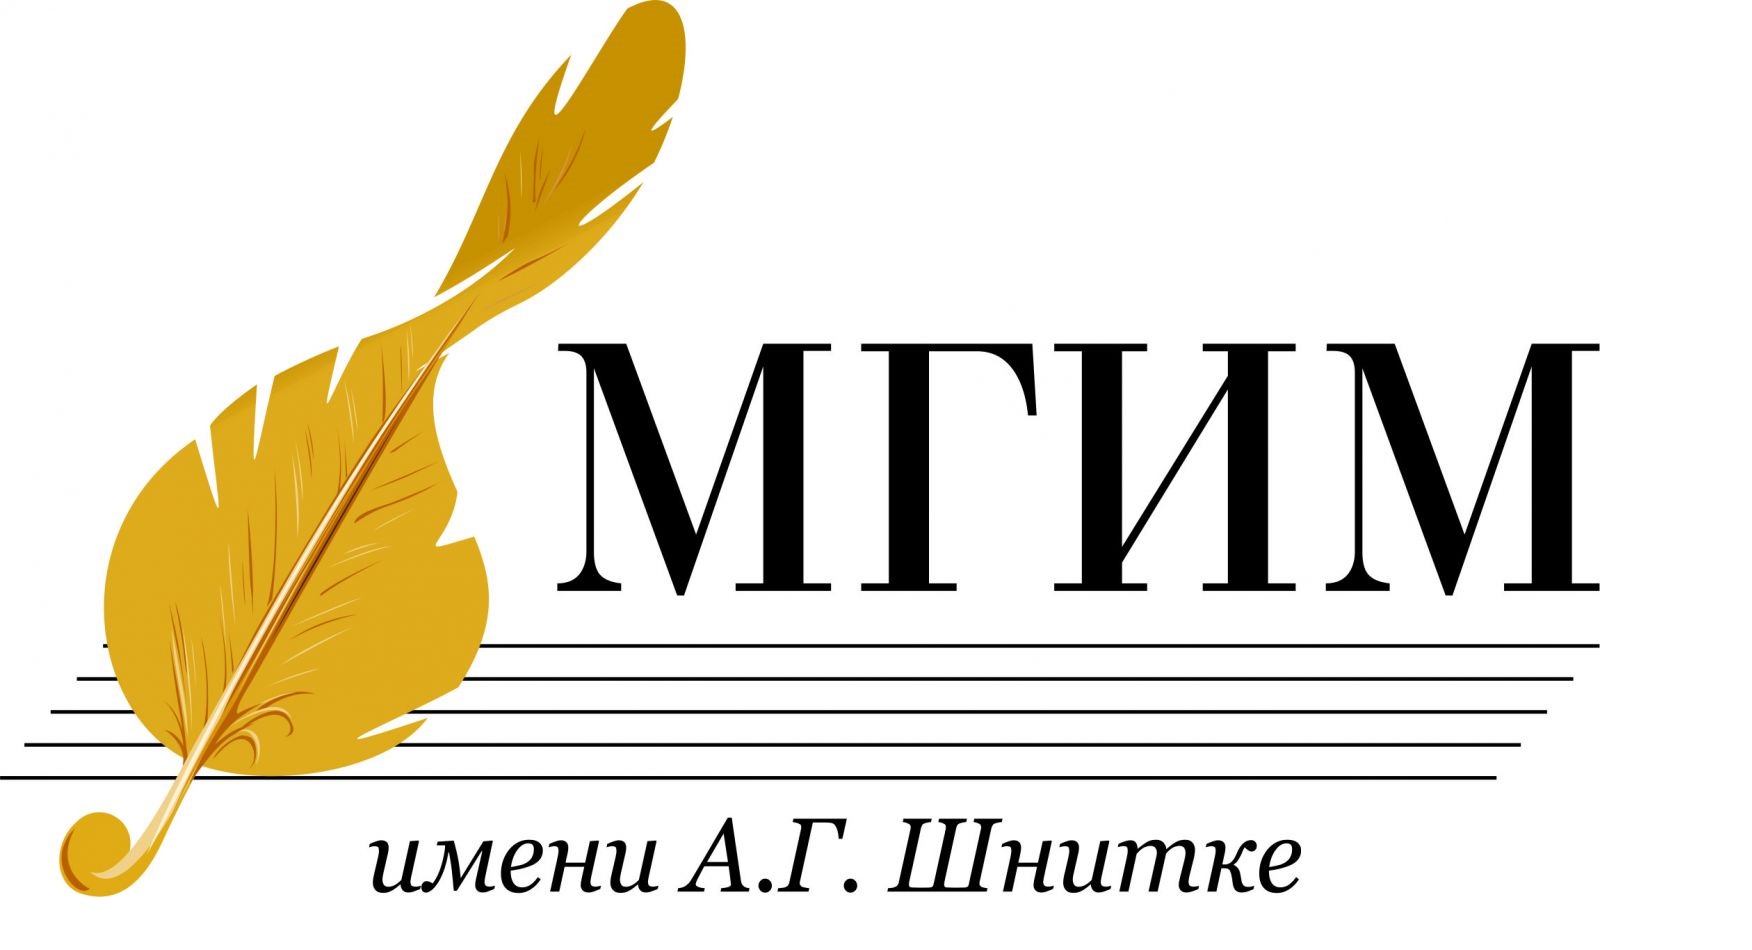 دانشگاه دولتی موسیقی به نام شنیتکا